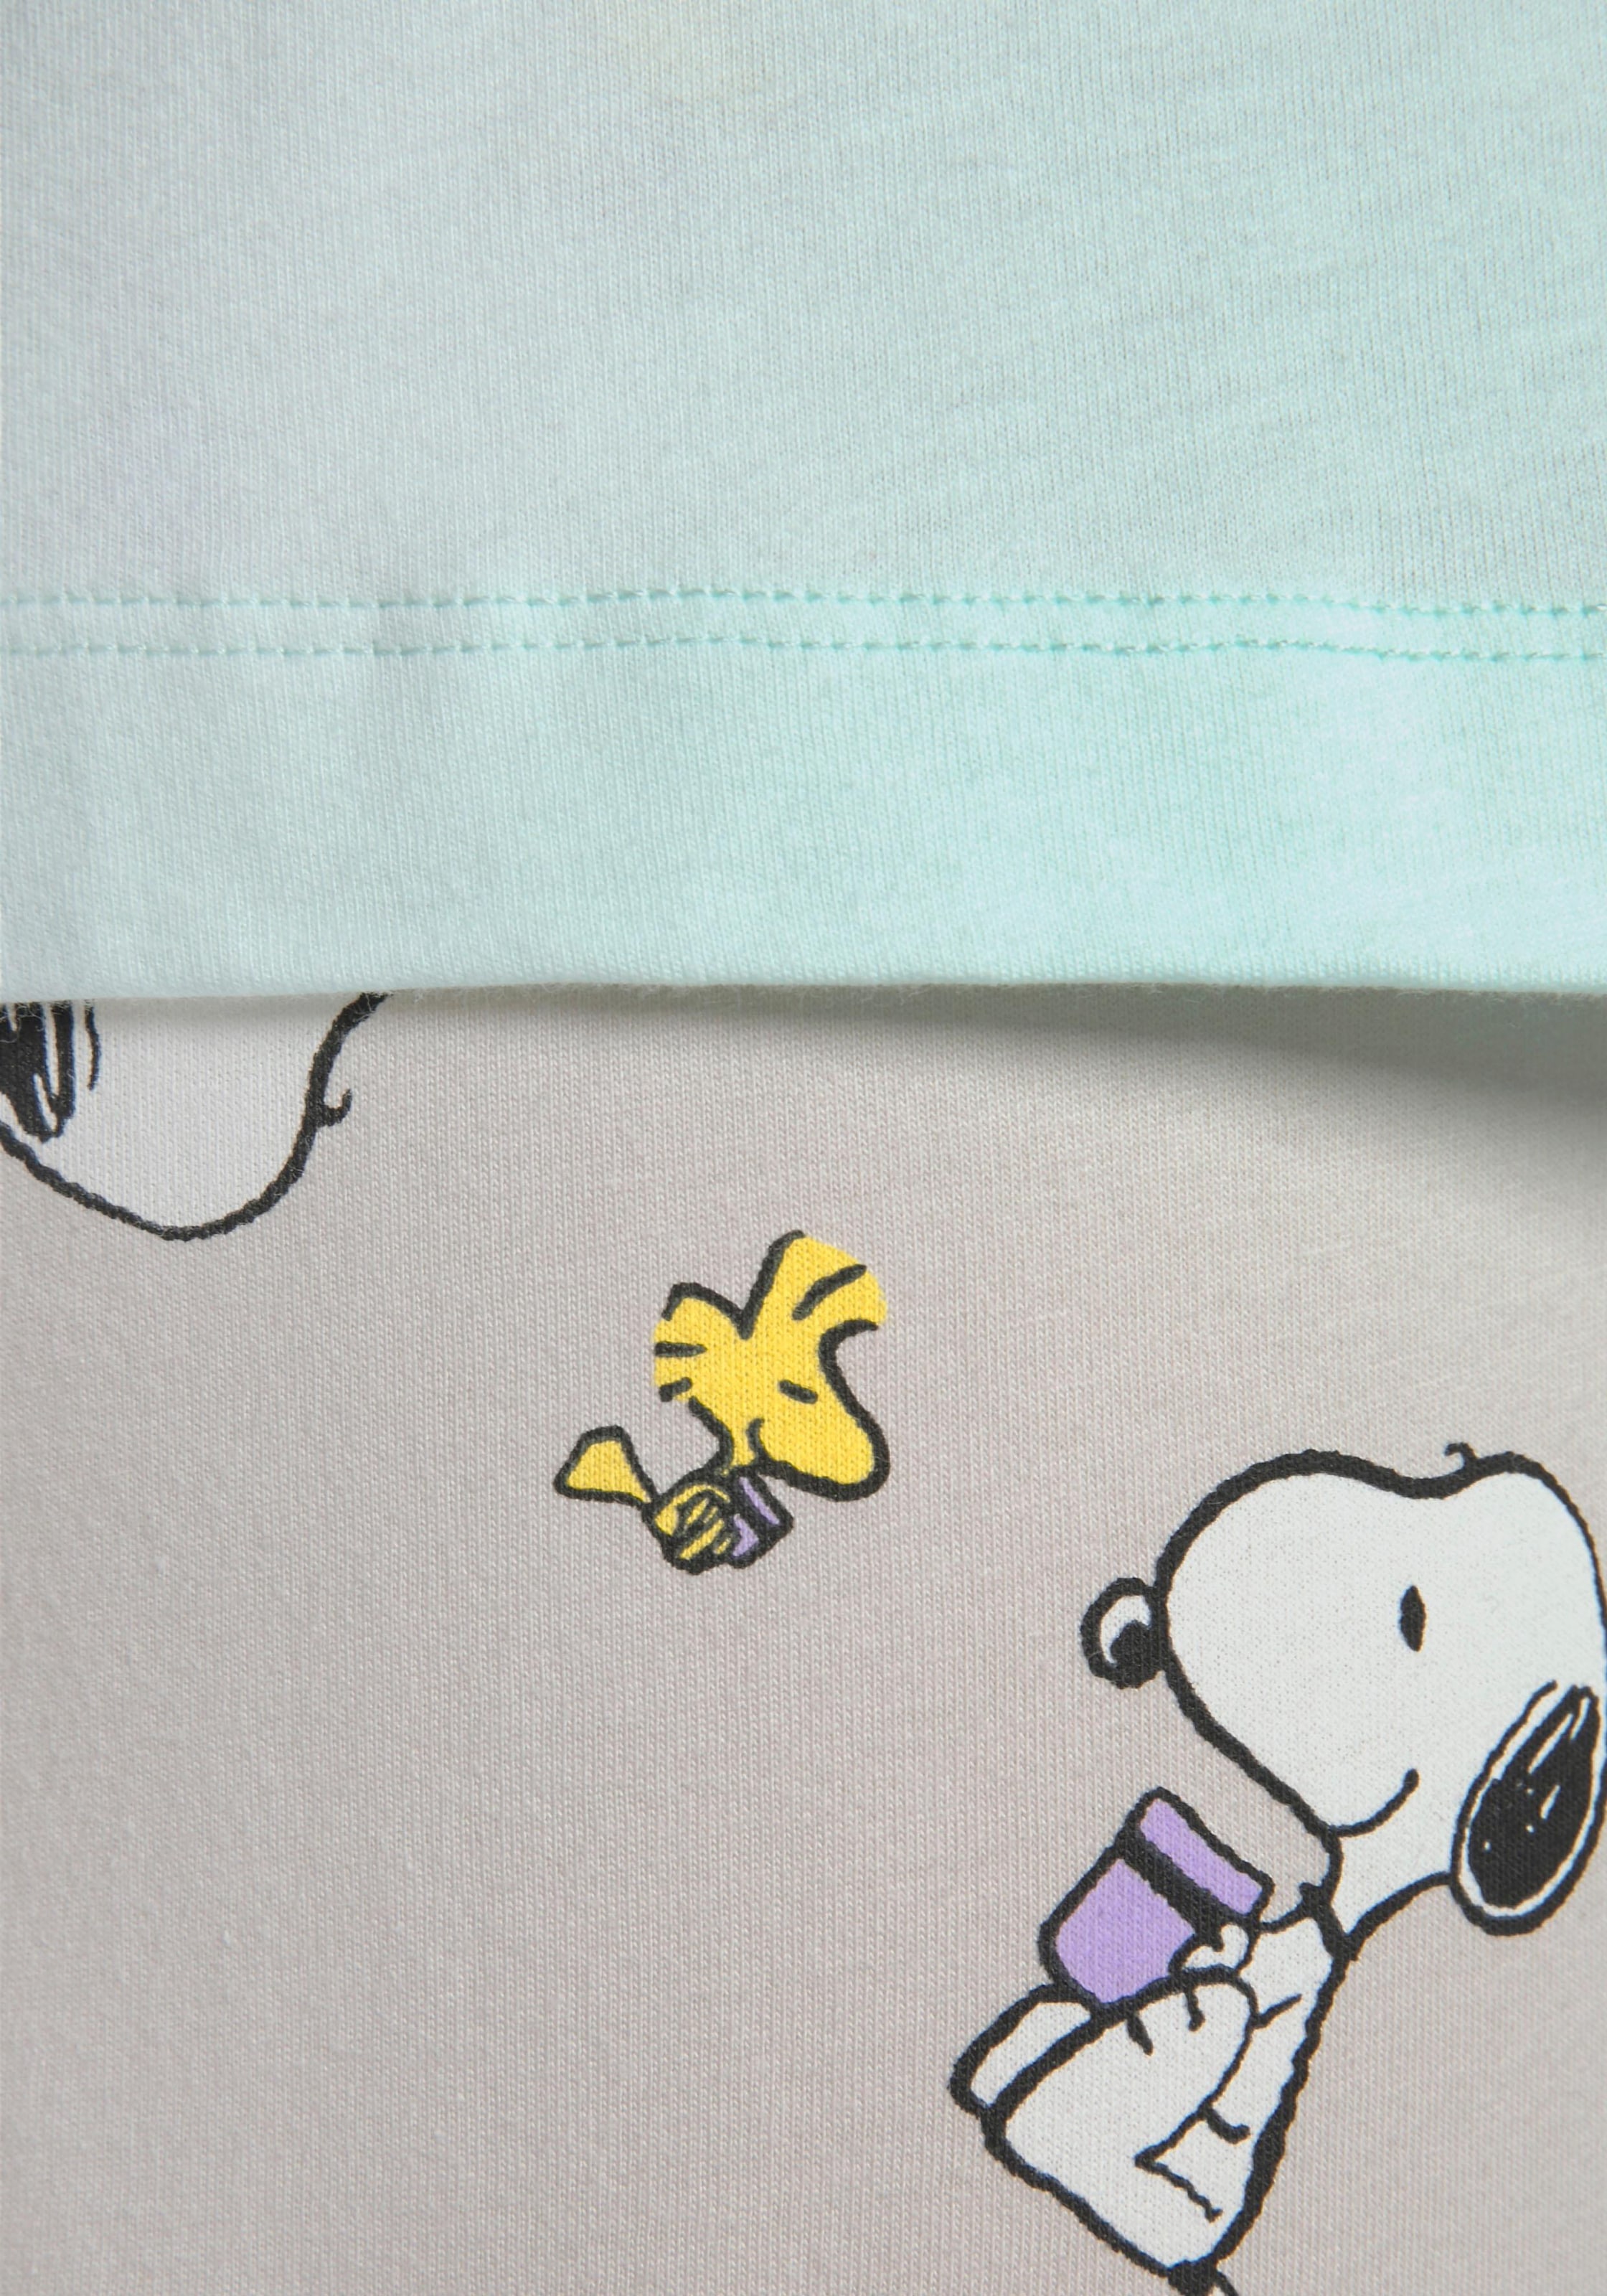 Peanuts Pyjama, (2 tlg., 1 Stück), mit Snoopy und Woodstock Druck bei ♕